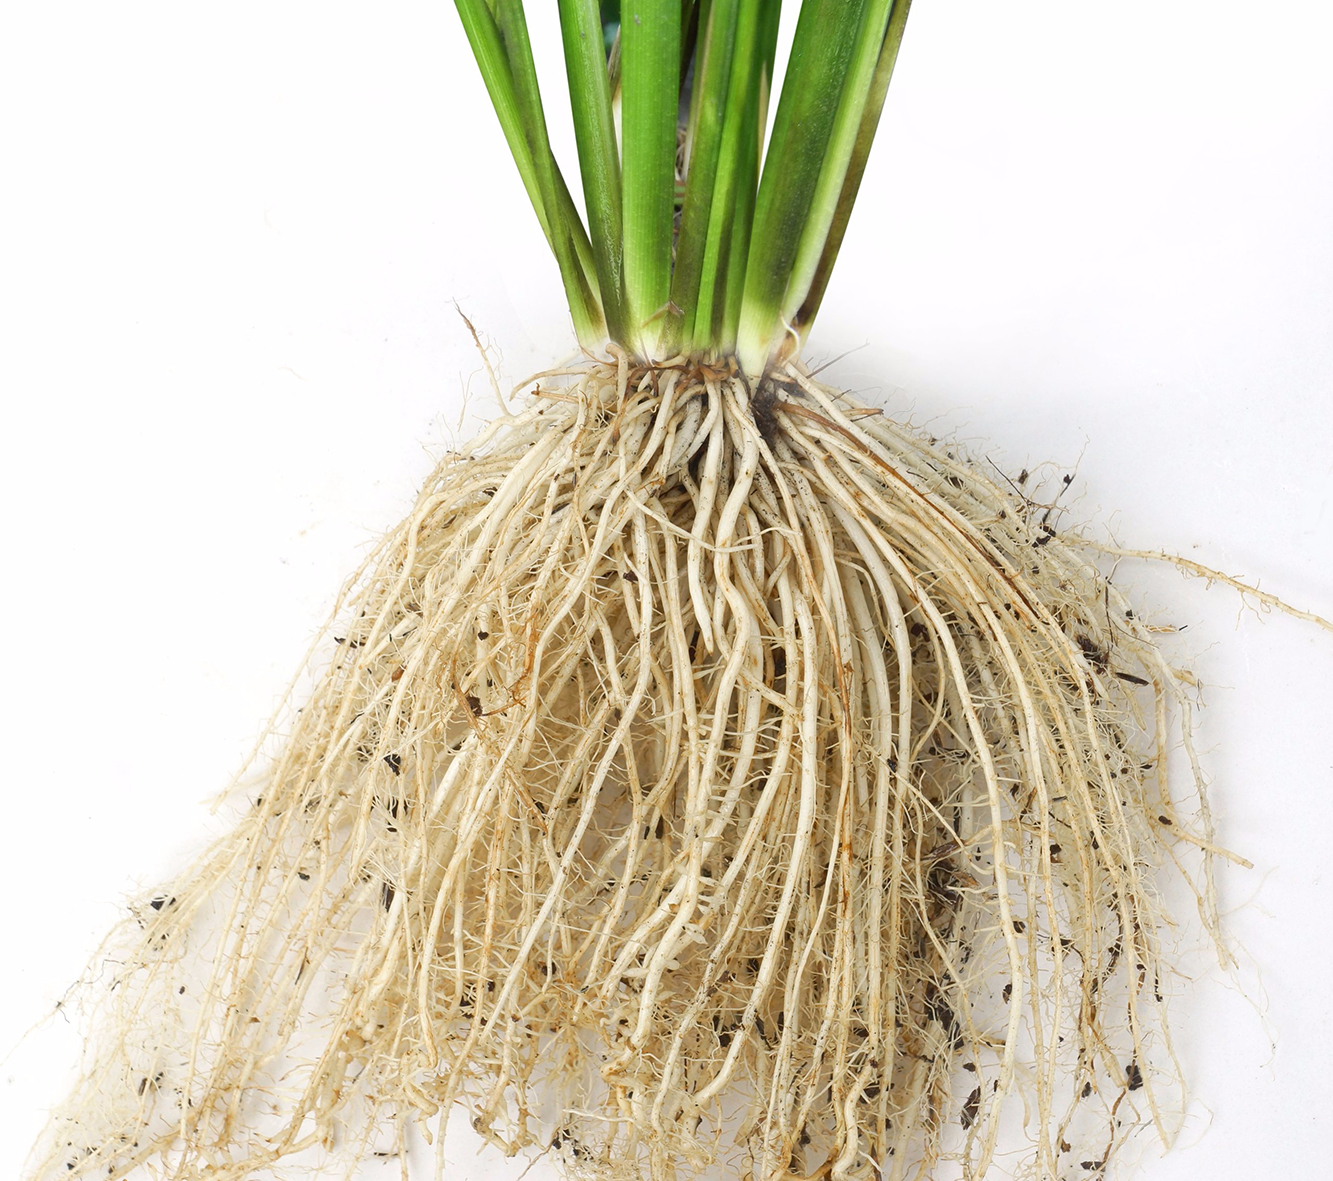 Sử dụng thuốc kích rễ Rocken Baclay giúp bộ rễ cây lúa phát triển mạnh mẽ tránh bị đỗ ngã